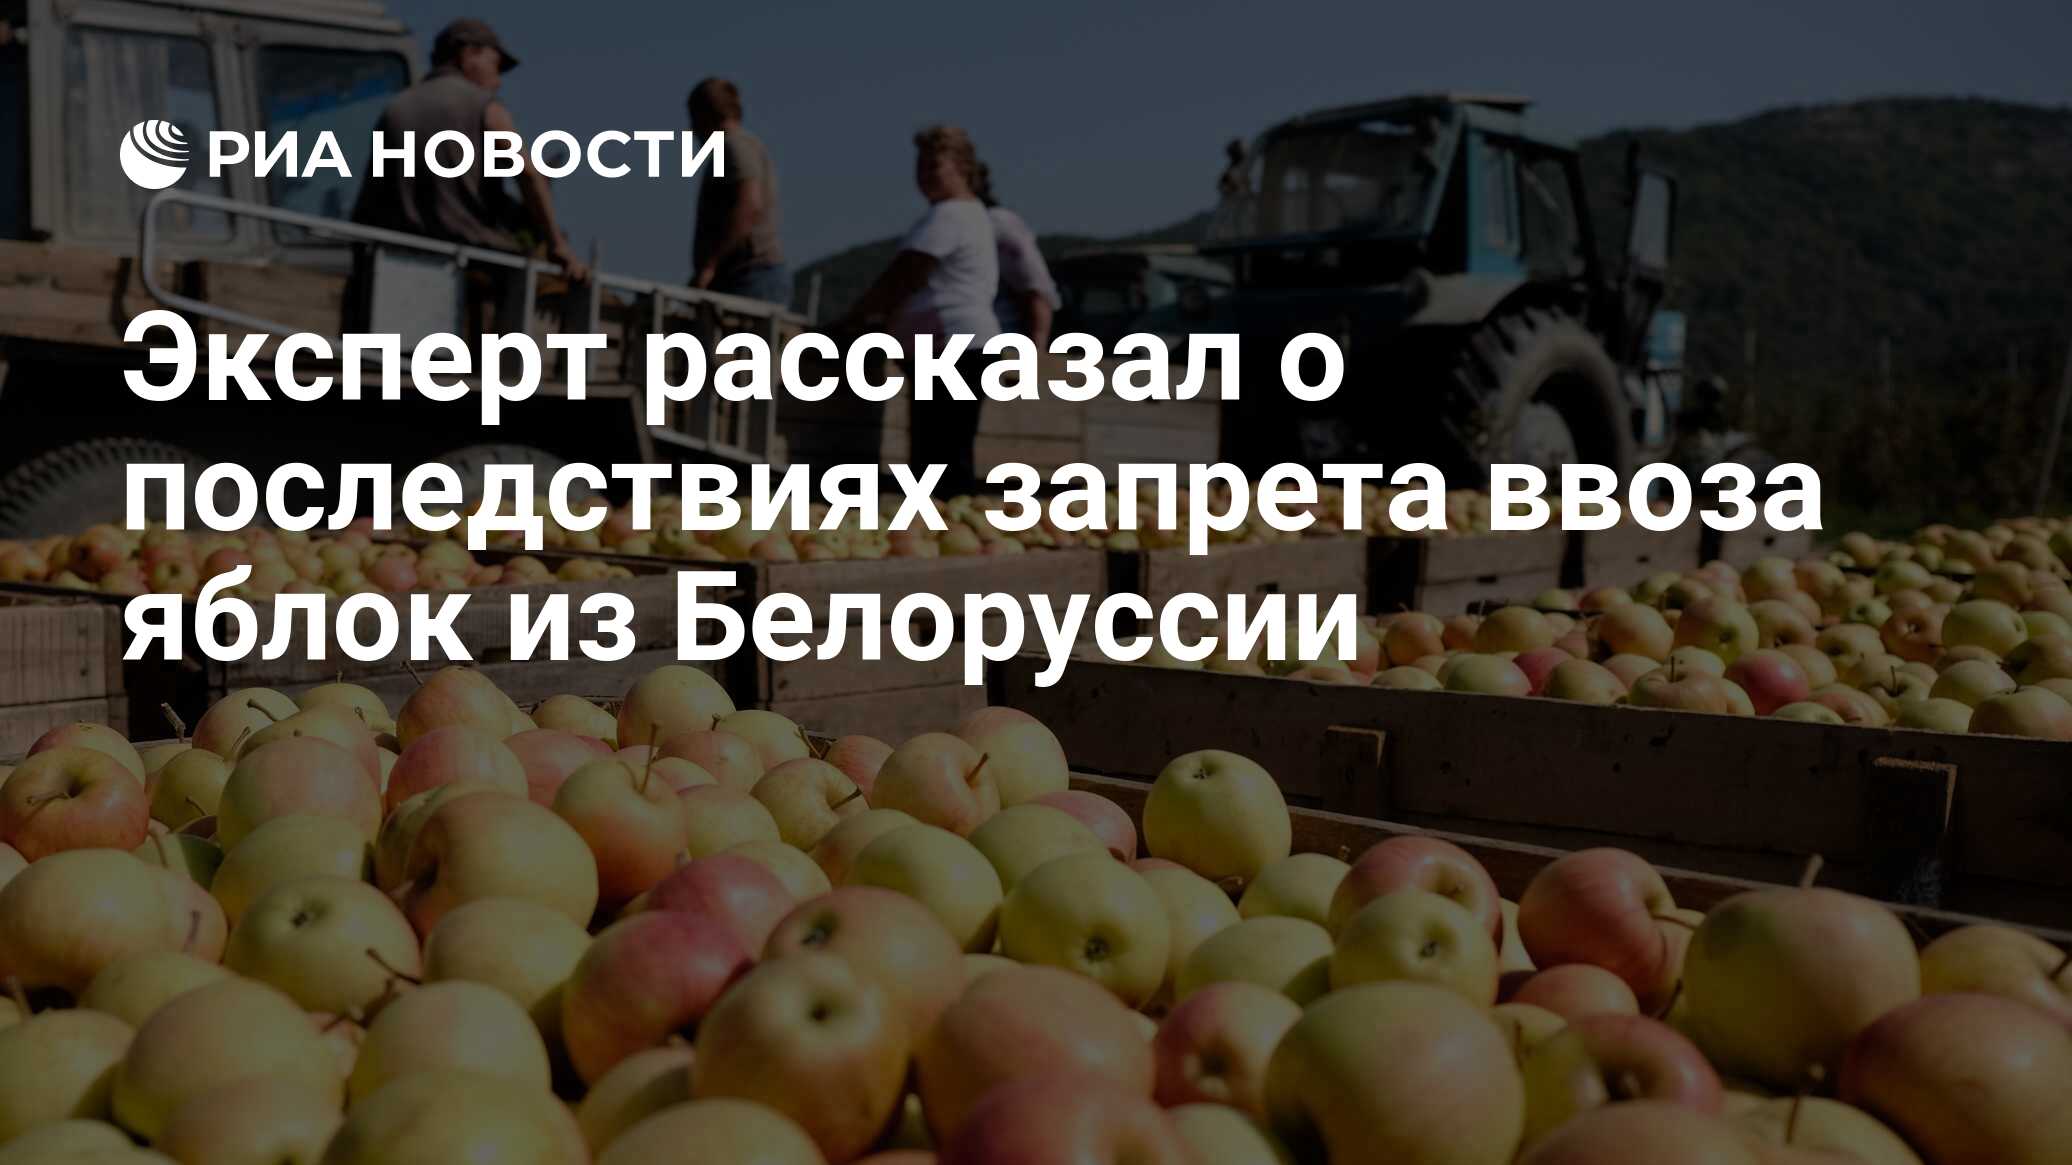 Правительство ввело запрет на ввоз яблок. Поляки запрещённые ко ввозу в Россию яблоки. Правительство ввело запрет на ввоз яблок и груш из других стран.